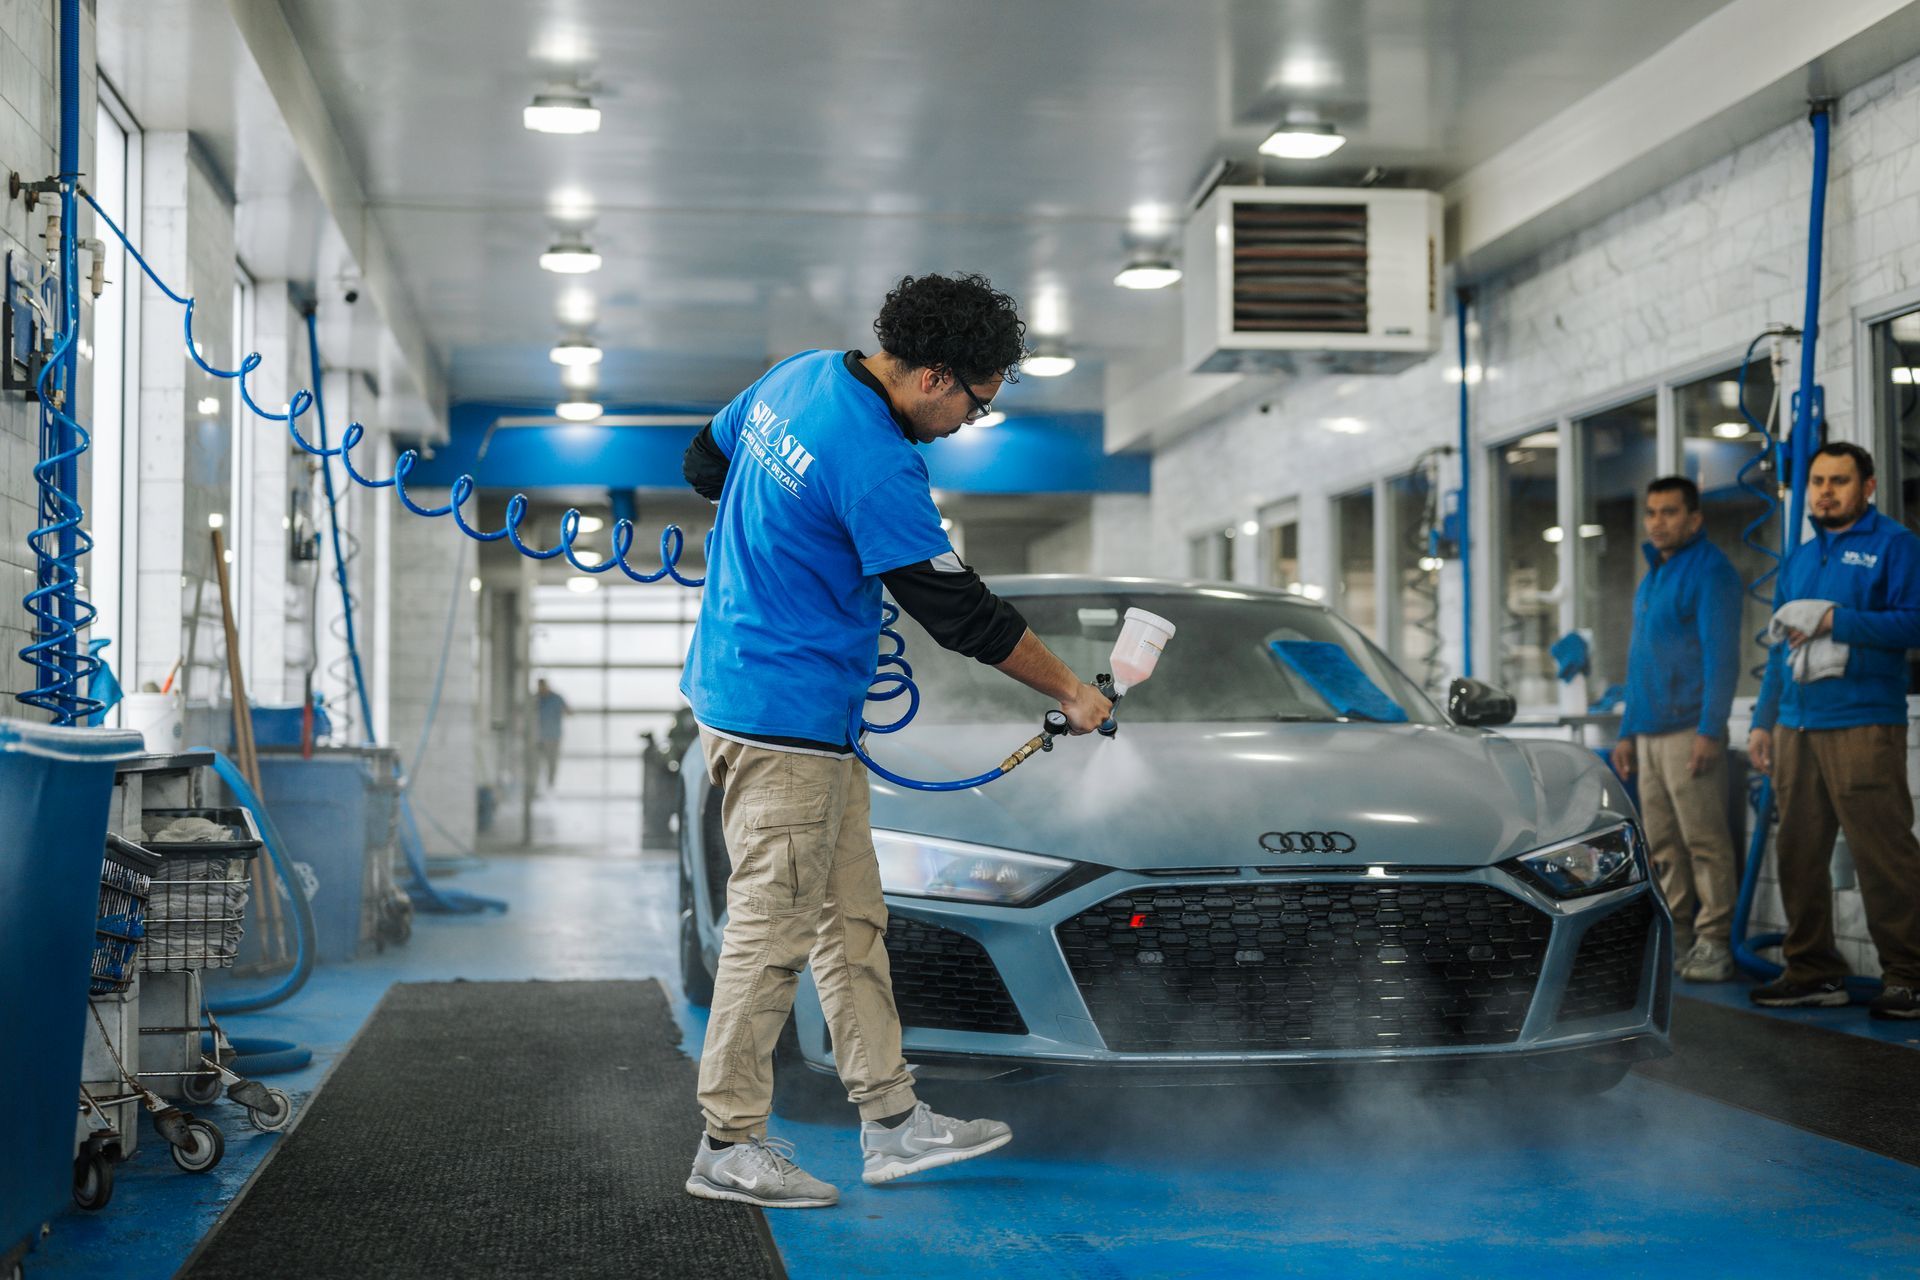 A man is washing a car in a car wash.